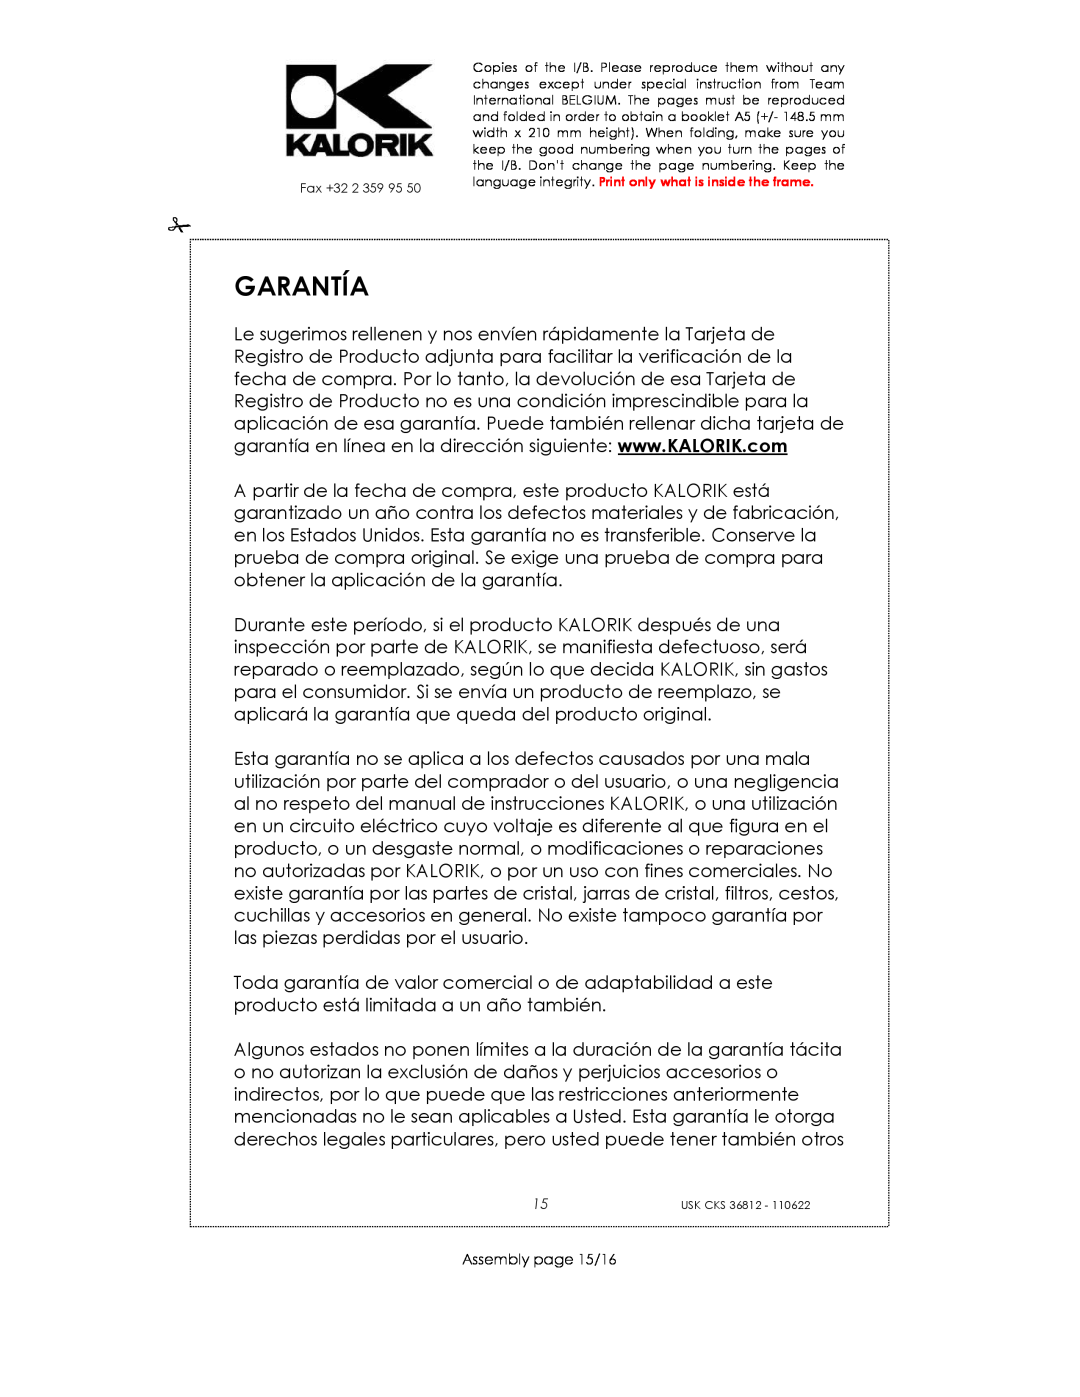 Kalorik USK CKS 36812 manual Garantía, Assembly page 15/16 